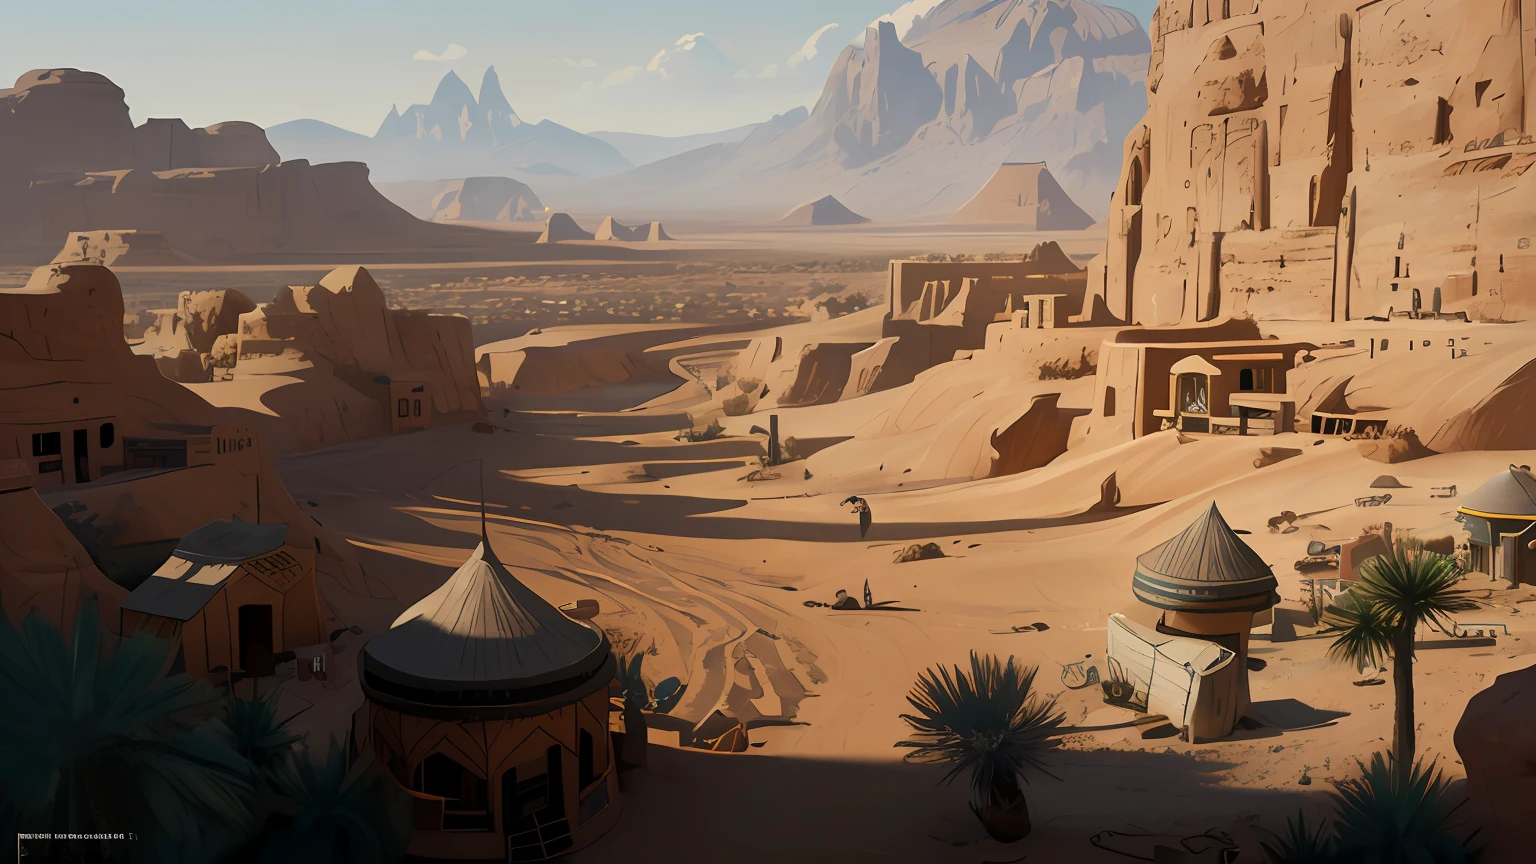 Есть картина с изображением пустынного города，Фон - гора, концепт-арт обои 4K, Detailed концепт-арт 4к, живописный концепт-арт, город пустыни, концепт-арт 4к, 4к концепт-арт, Концепт-арт с высокой детализацией в 8 тыс., концепт-арт 8к, подробный цифровой концепт-арт, где-то в песках пустыни